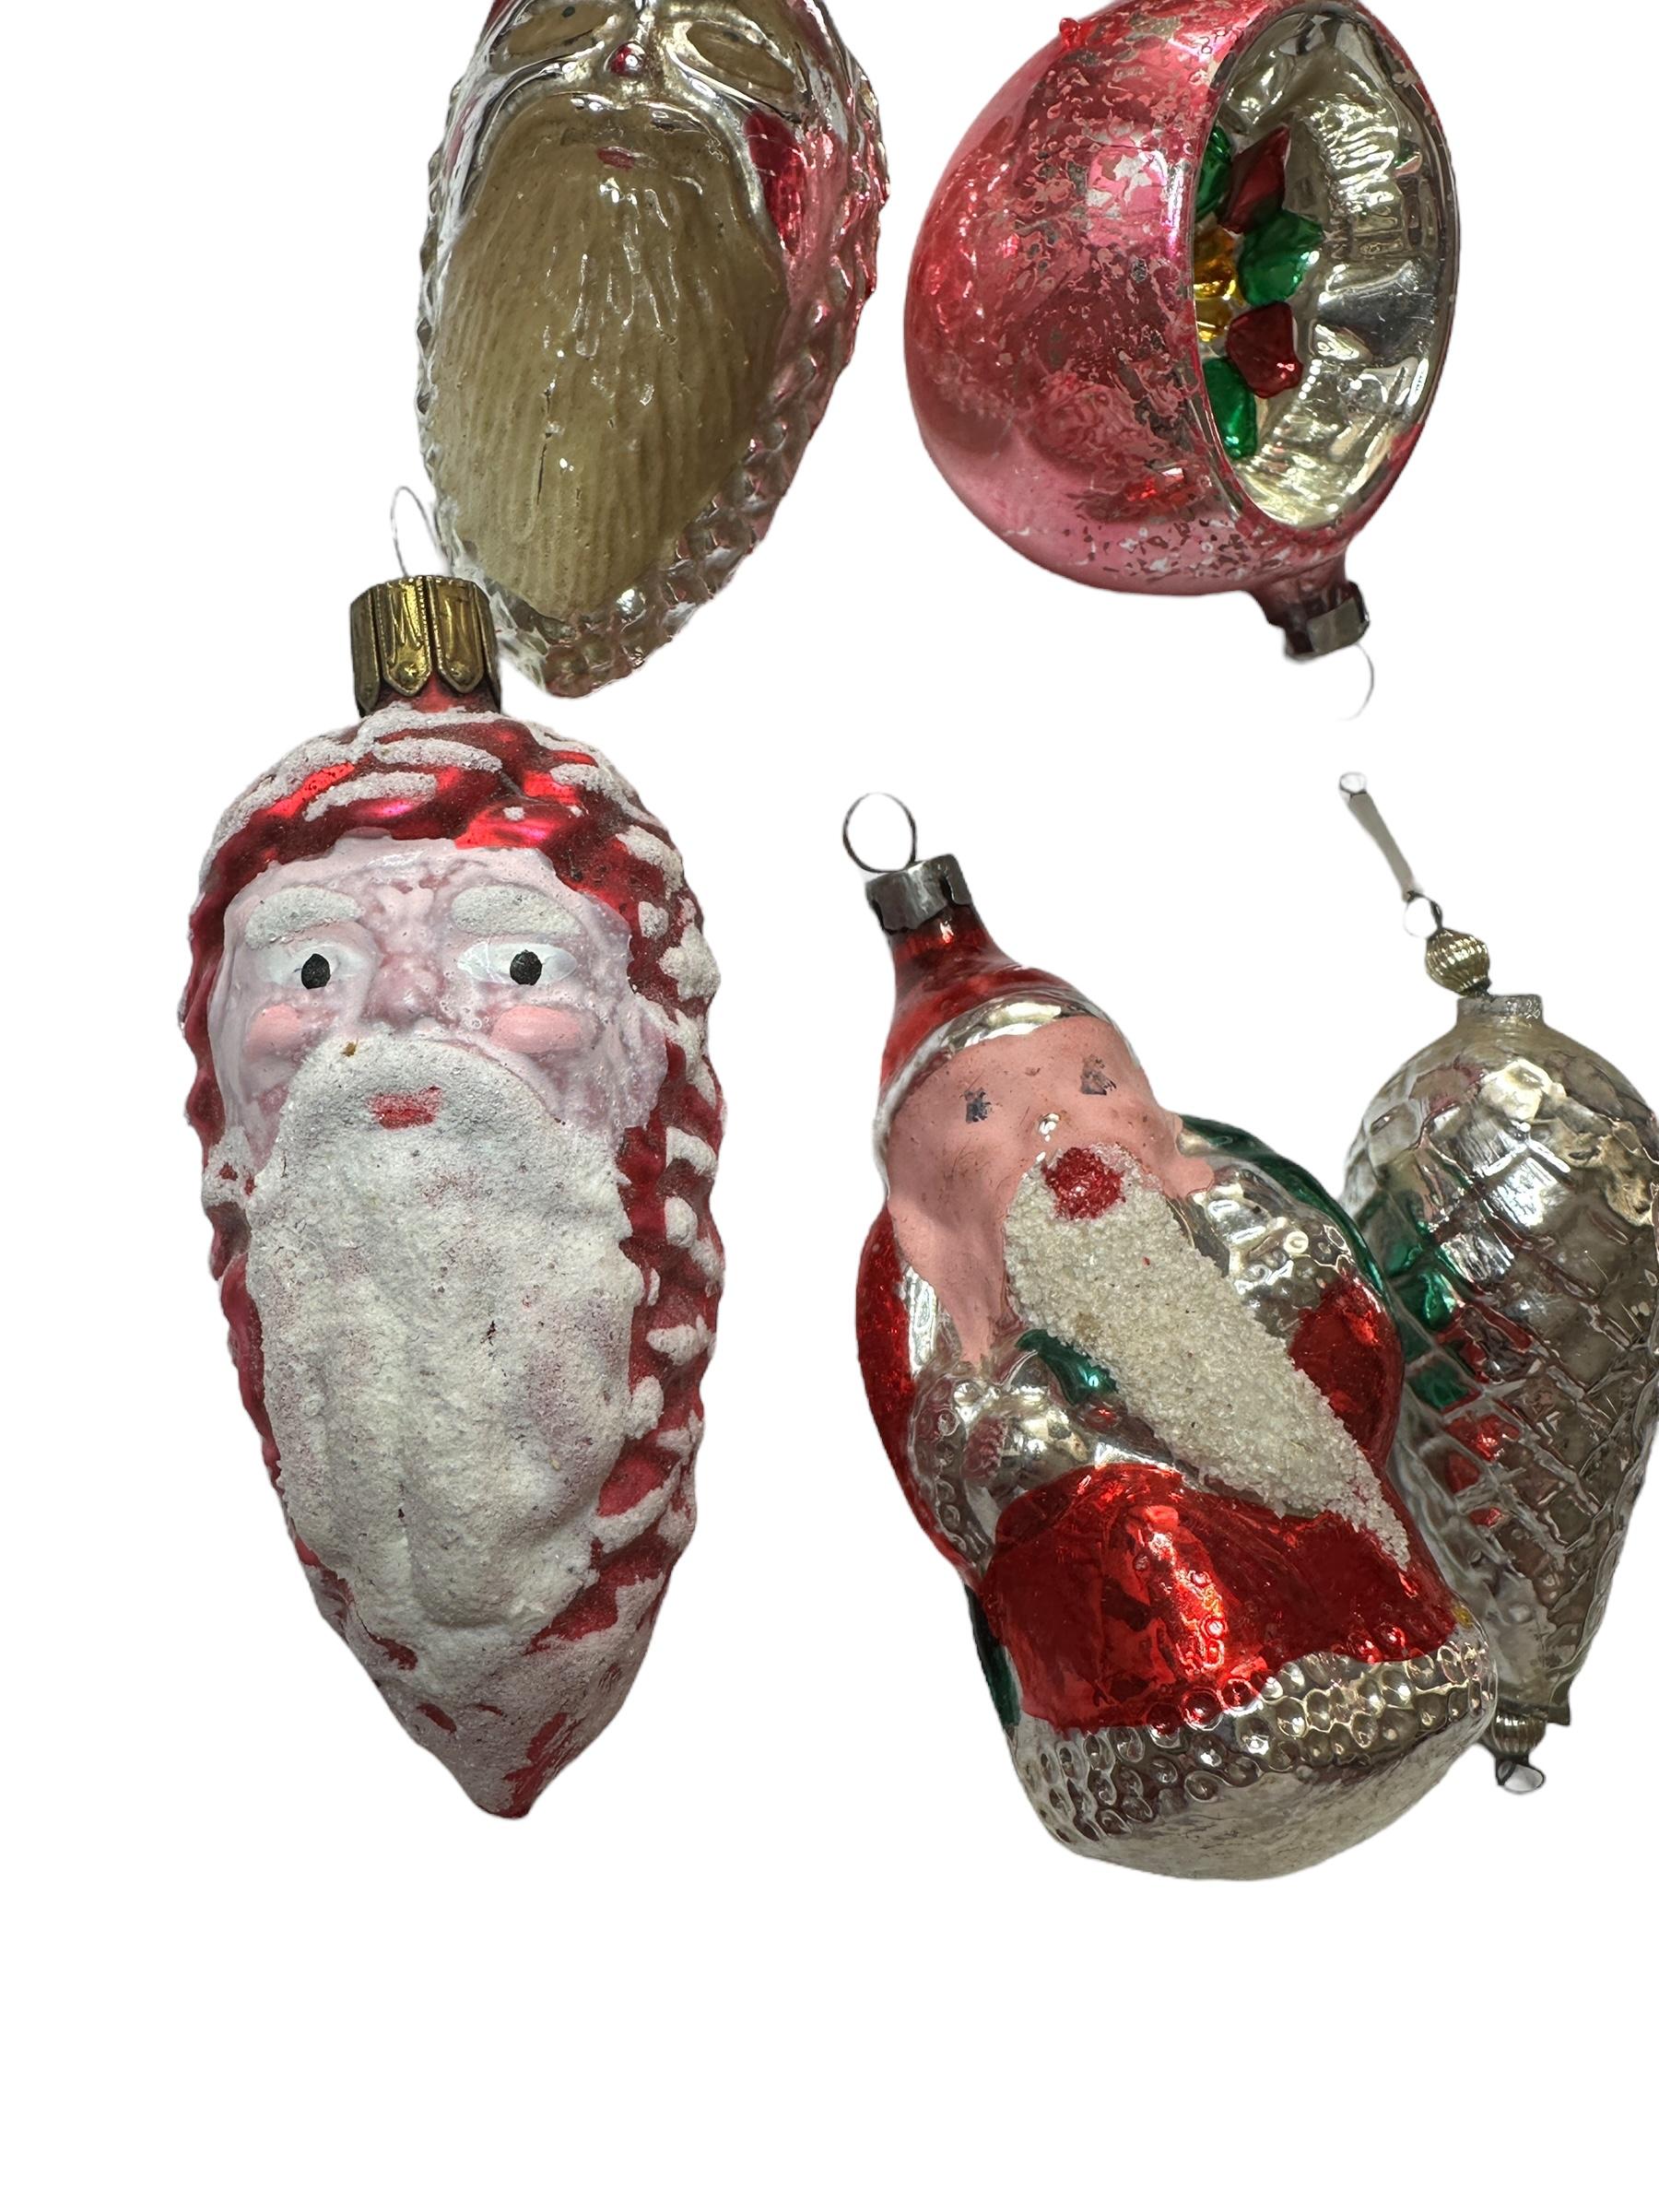 Rare ensemble d'ornements de Noël provenant d'Allemagne ou d'Autriche. Chacun d'entre eux est fabriqué en verre soufflé à la bouche. Ils constitueront un excellent complément à votre arbre de Noël ou à votre arbre à plumes. La taille est toujours